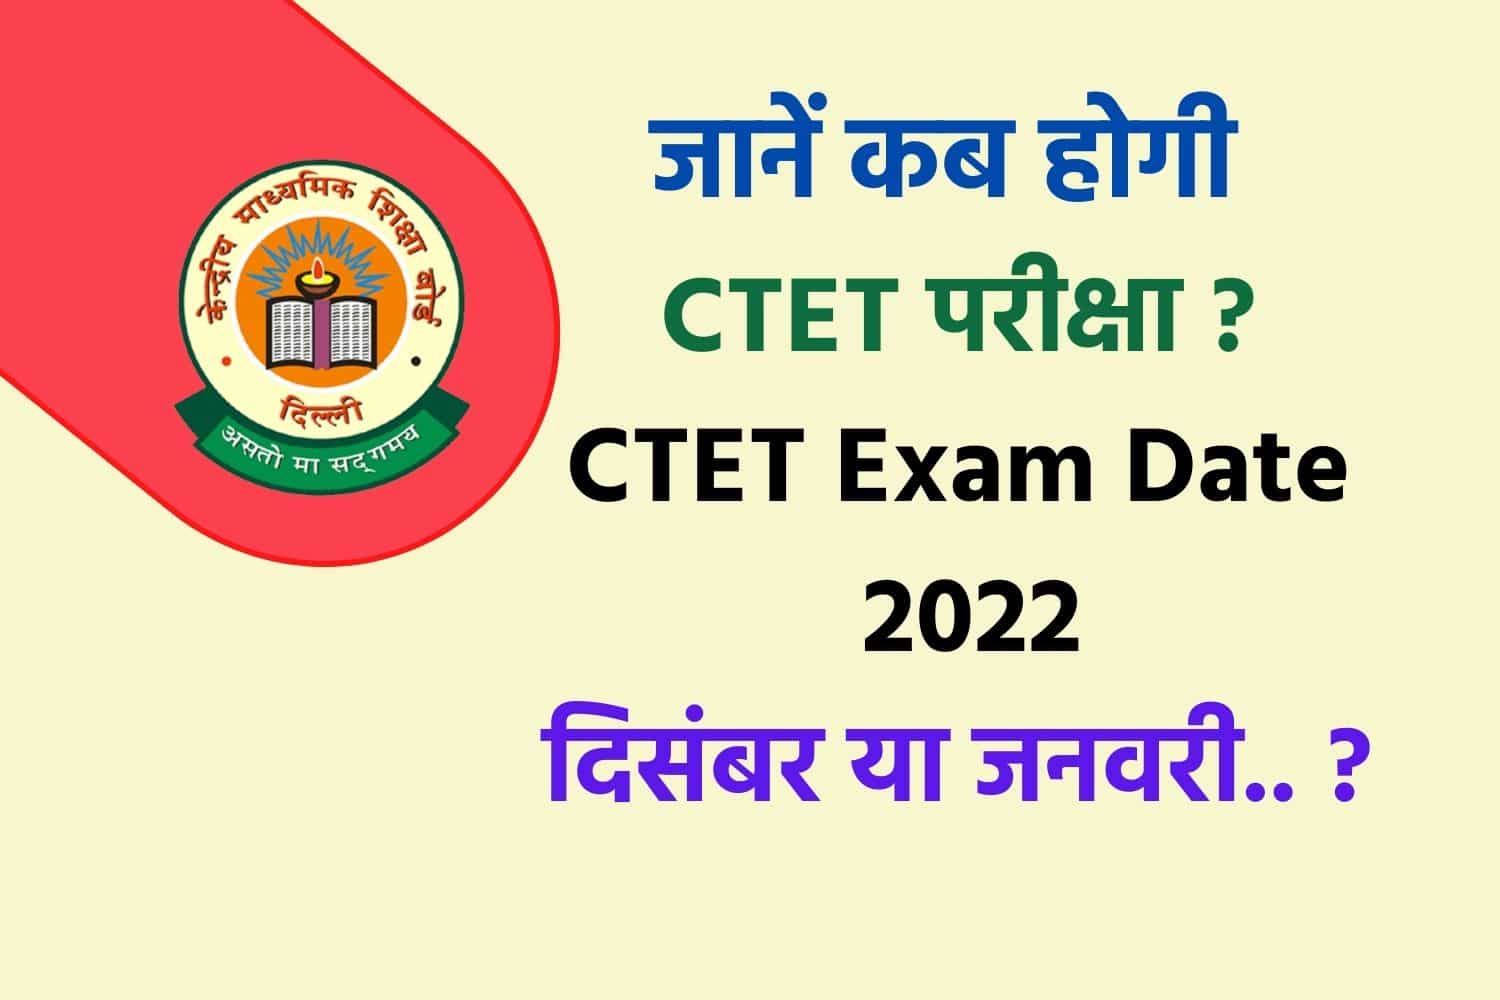 CTET Exam Date 2022 : सीटेट की परीक्षा दिसंबर में होगी या जनवरी में? यहां जानें